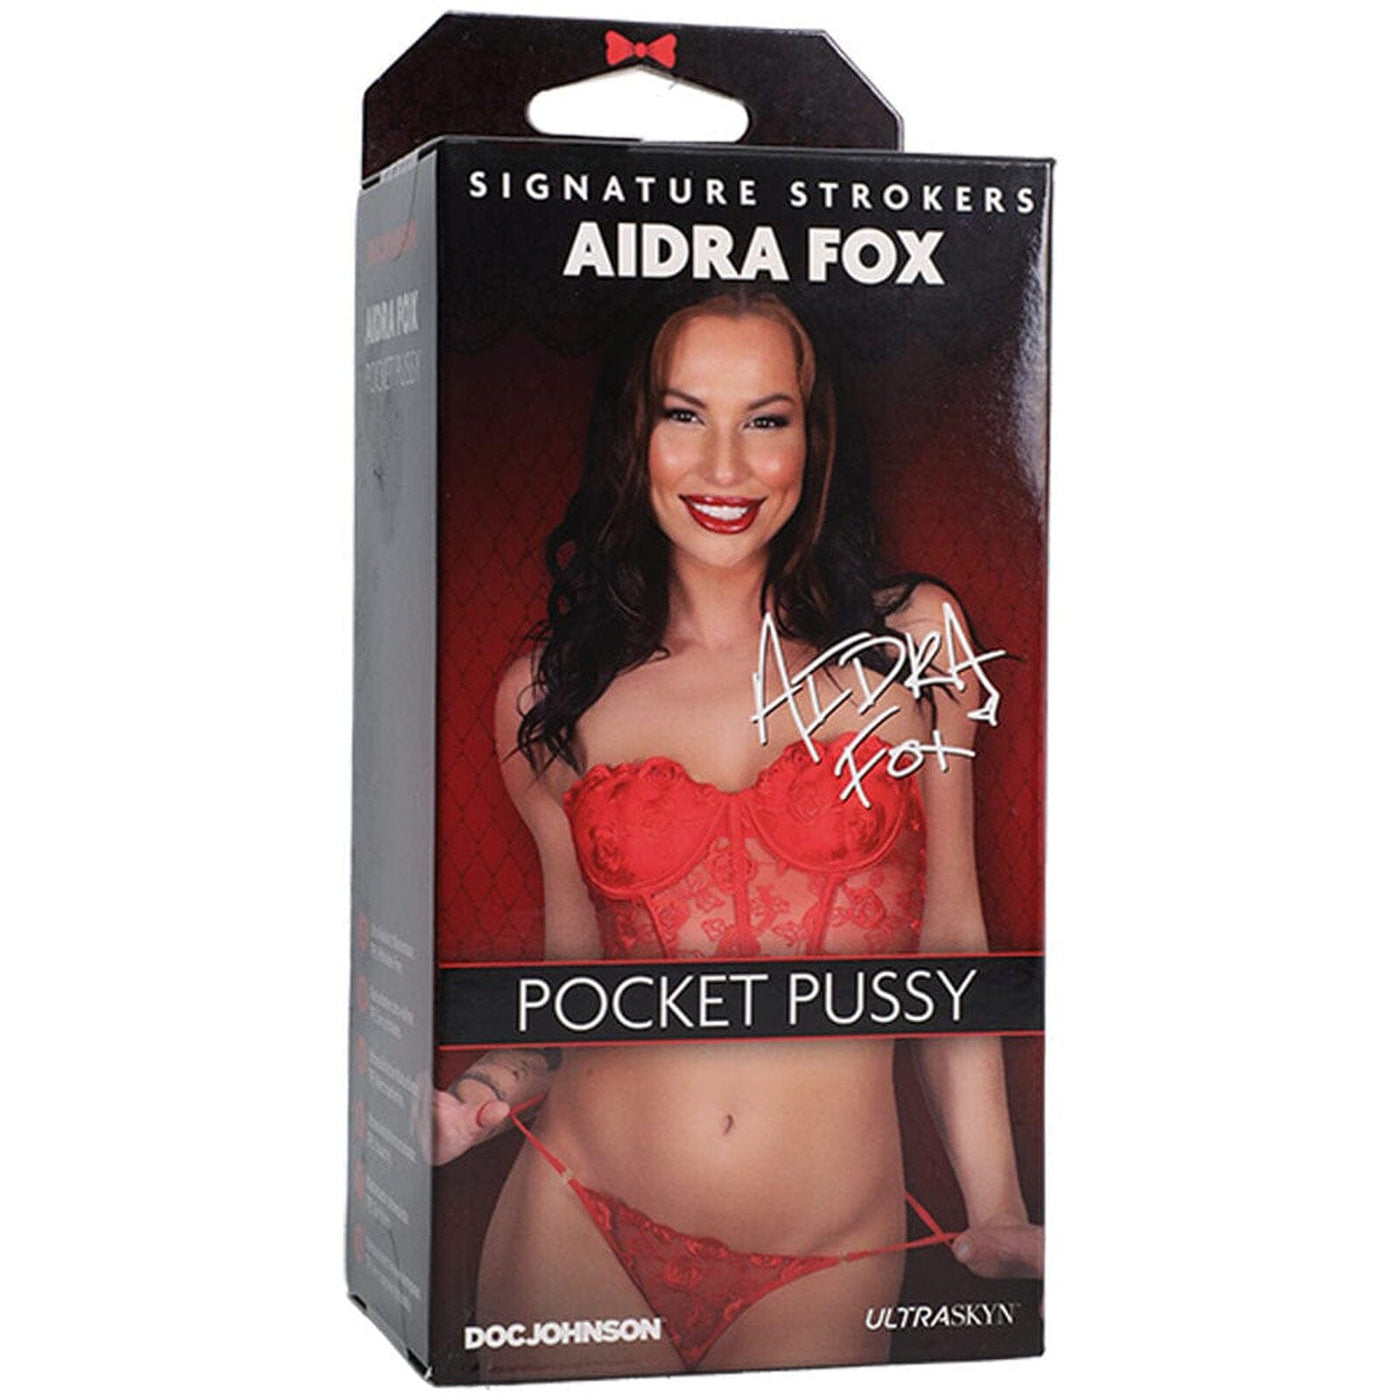 Signature Strokers Aidra Fox Pocket Pussy